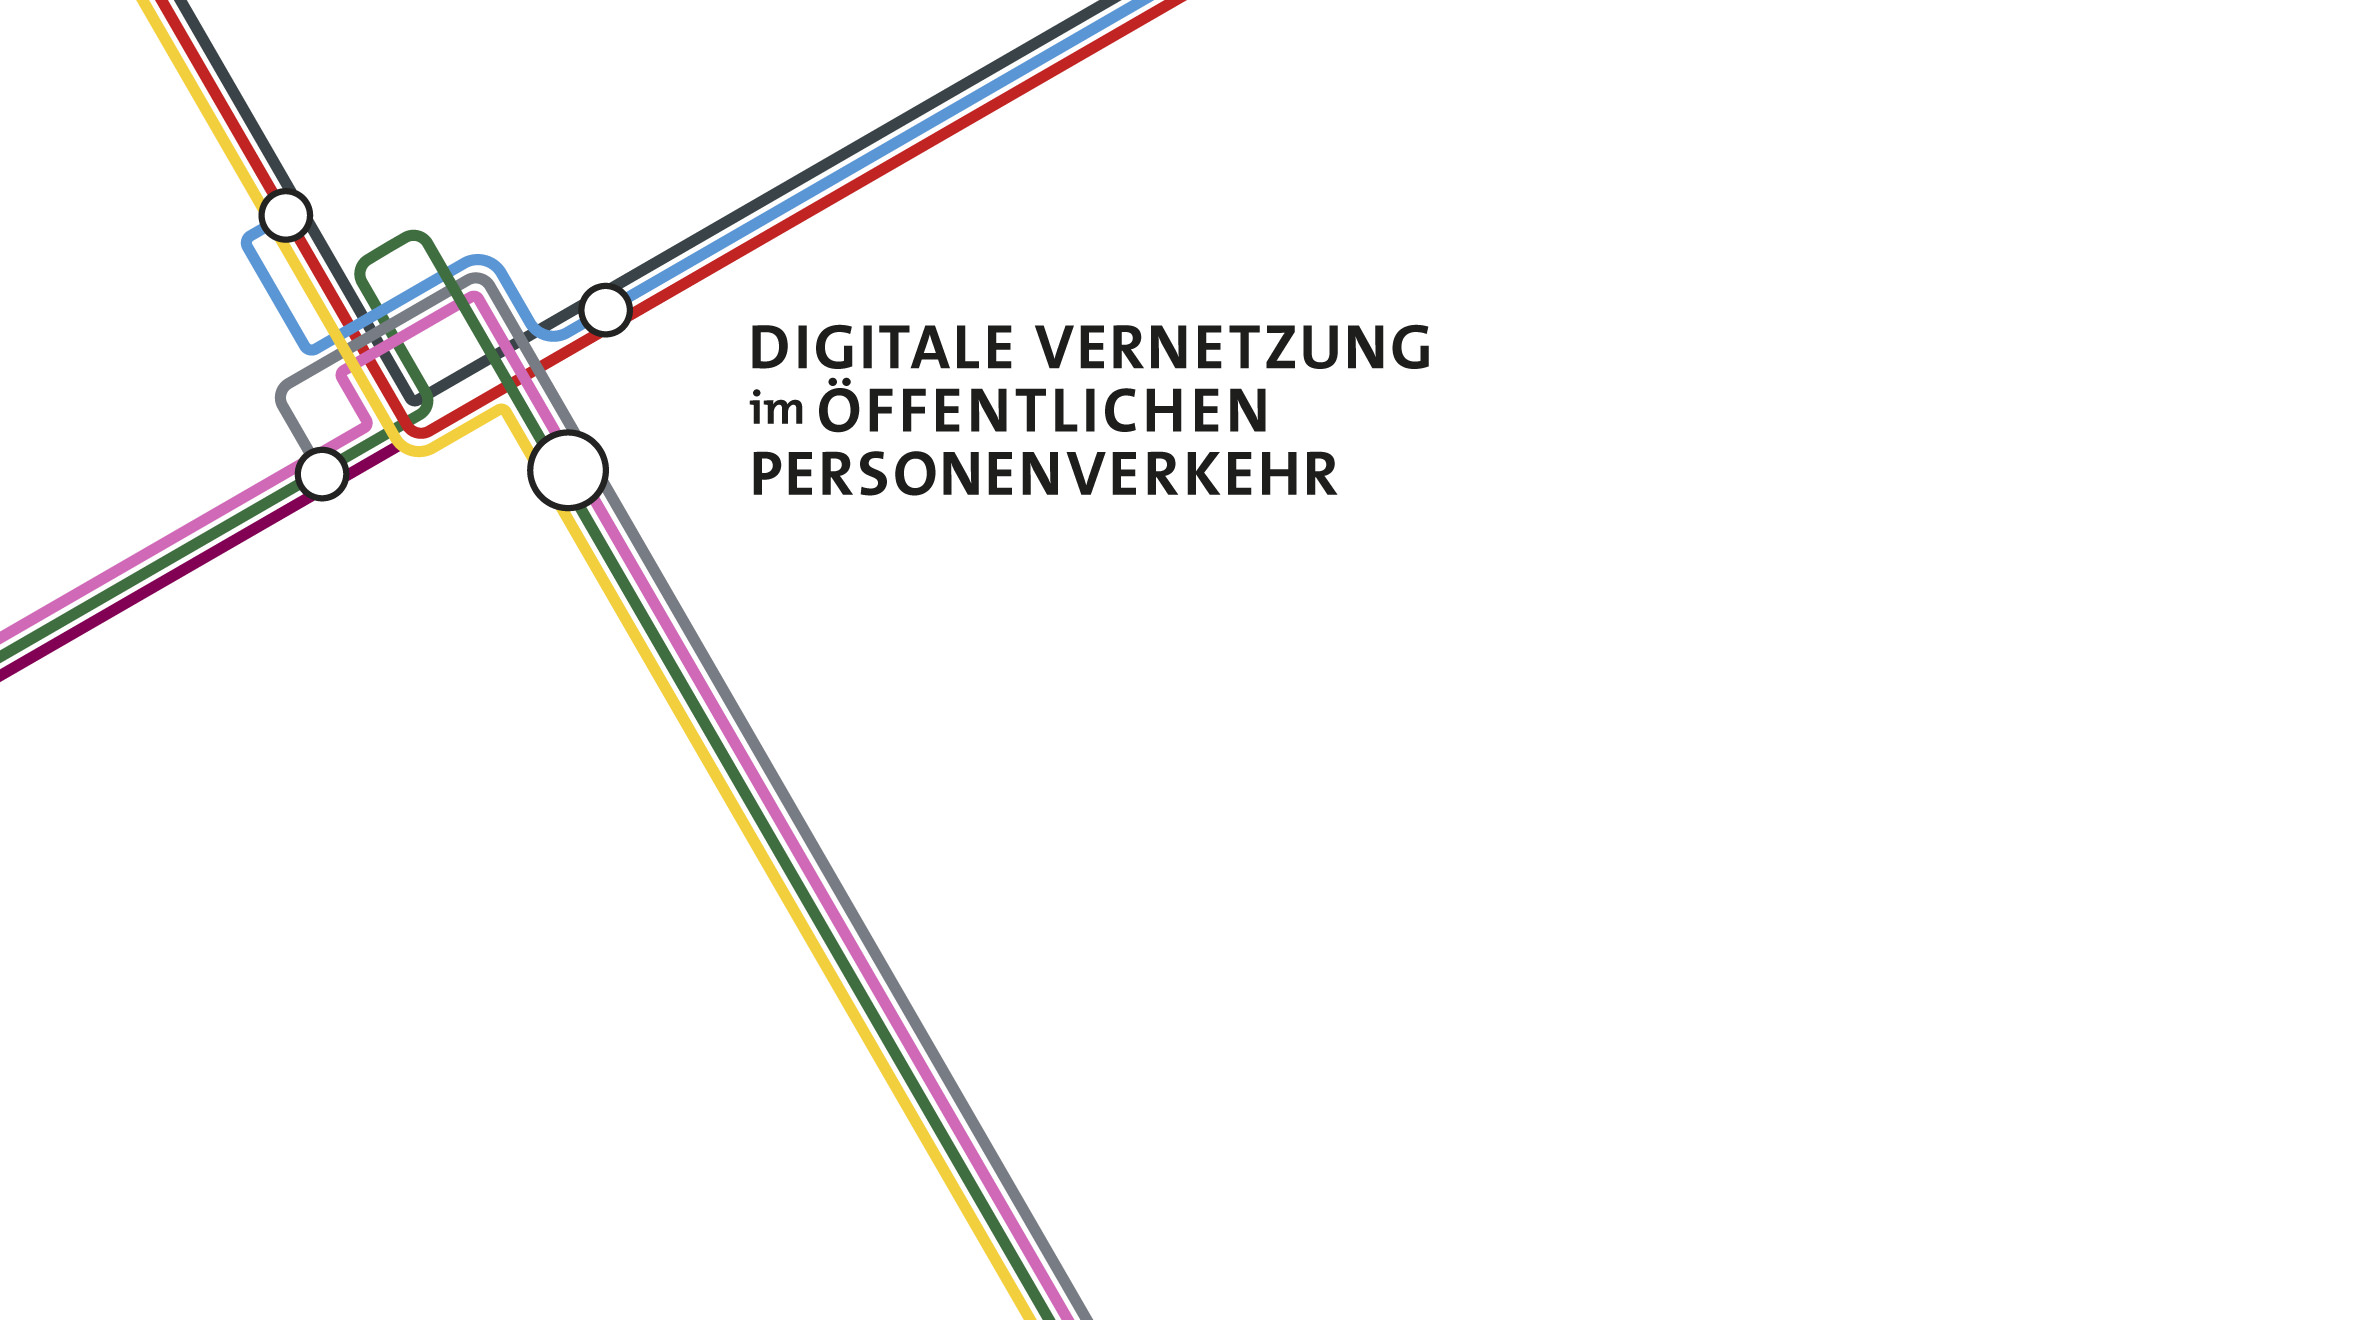 TÜV Rheinland - Digitale Vernetzung im Öffentlichen Personenverkehr, Logo